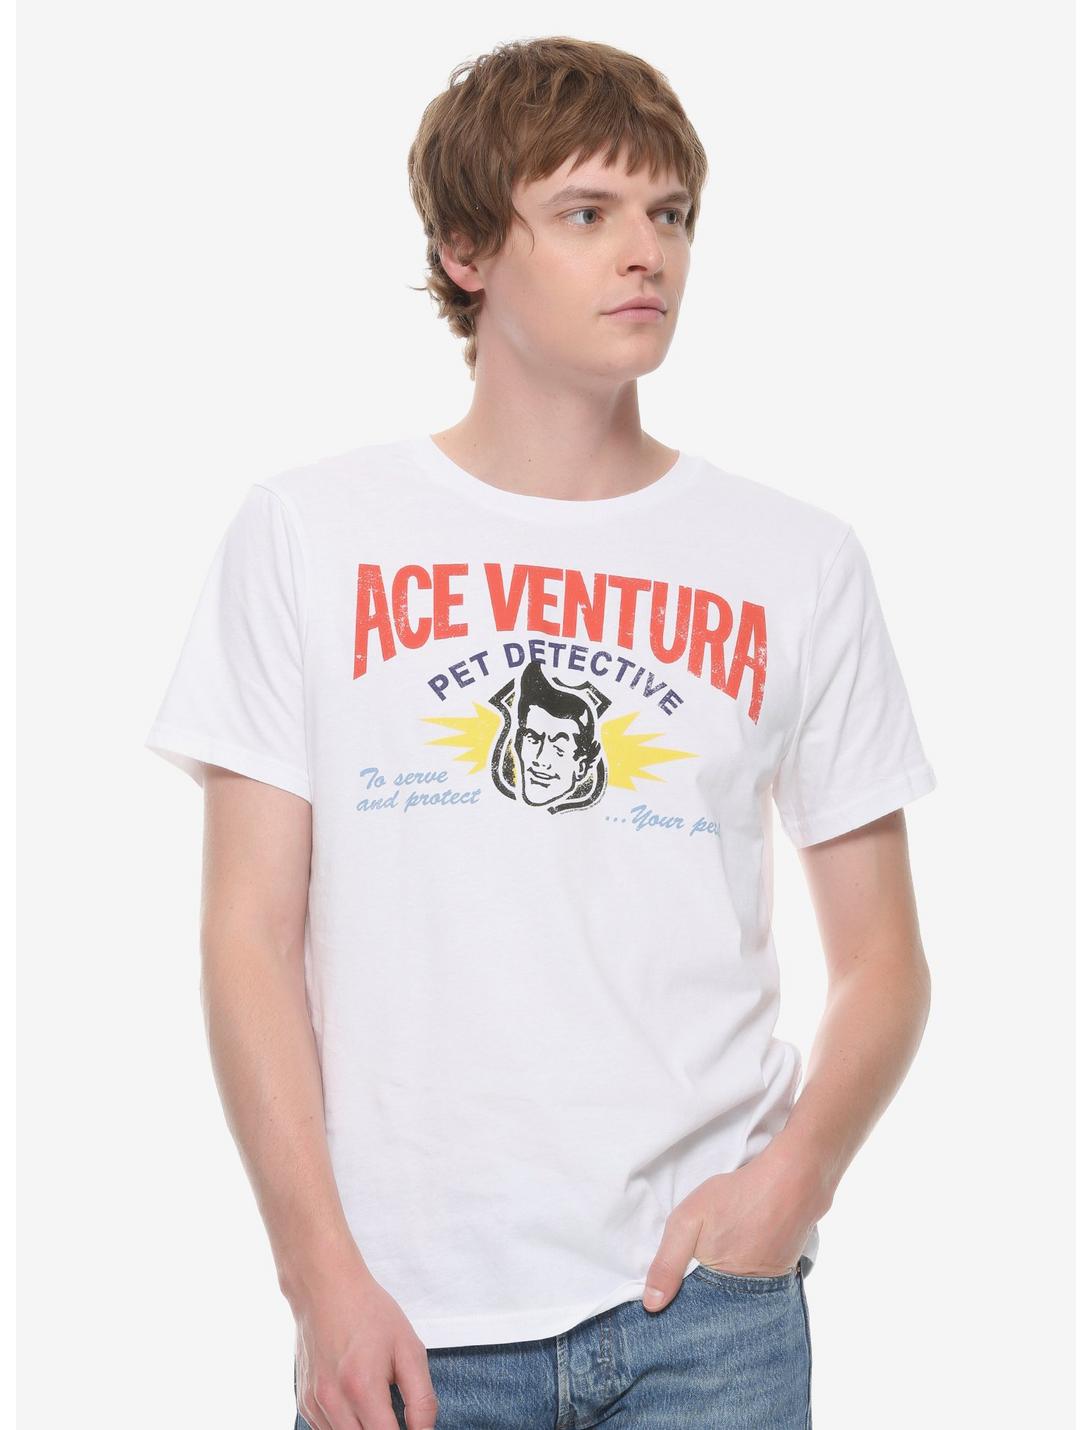 Ace Ventura: Pet Detective T-Shirt, WHITE, hi-res